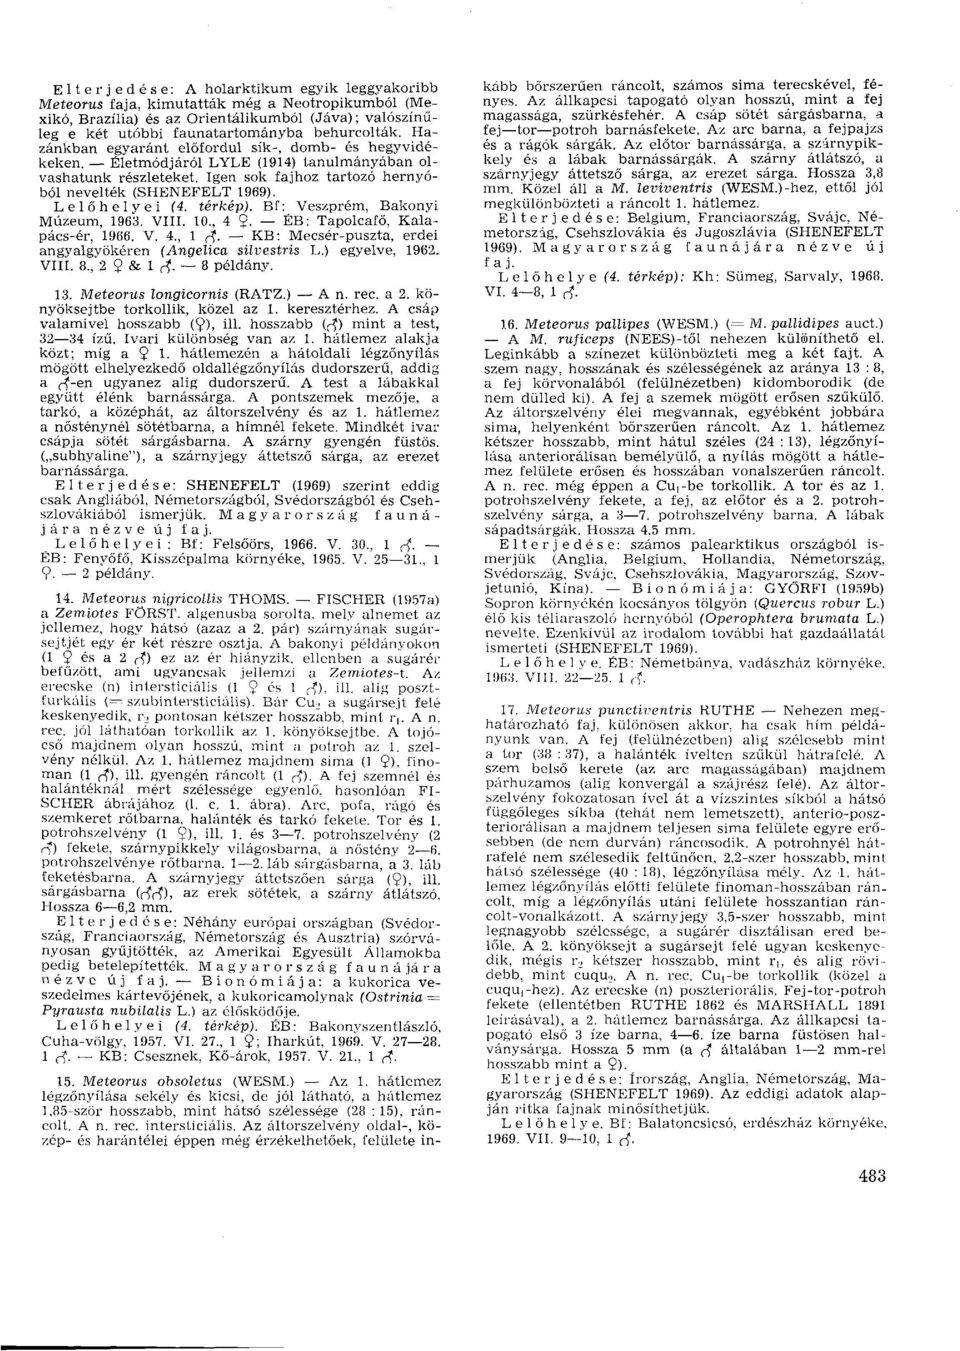 térkép). Bf: Veszprém, Bakonyi Múzeum, 1963. VIII. 10., 4 9- ÉB: Tapolcafő, Kalapács-ér, 1966. V. 4., 1 rf. KB: Mecsér-puszta, erdei angyalgyökéren (Angelica süvestris L.) egyelve, 1962. VIII. 8.